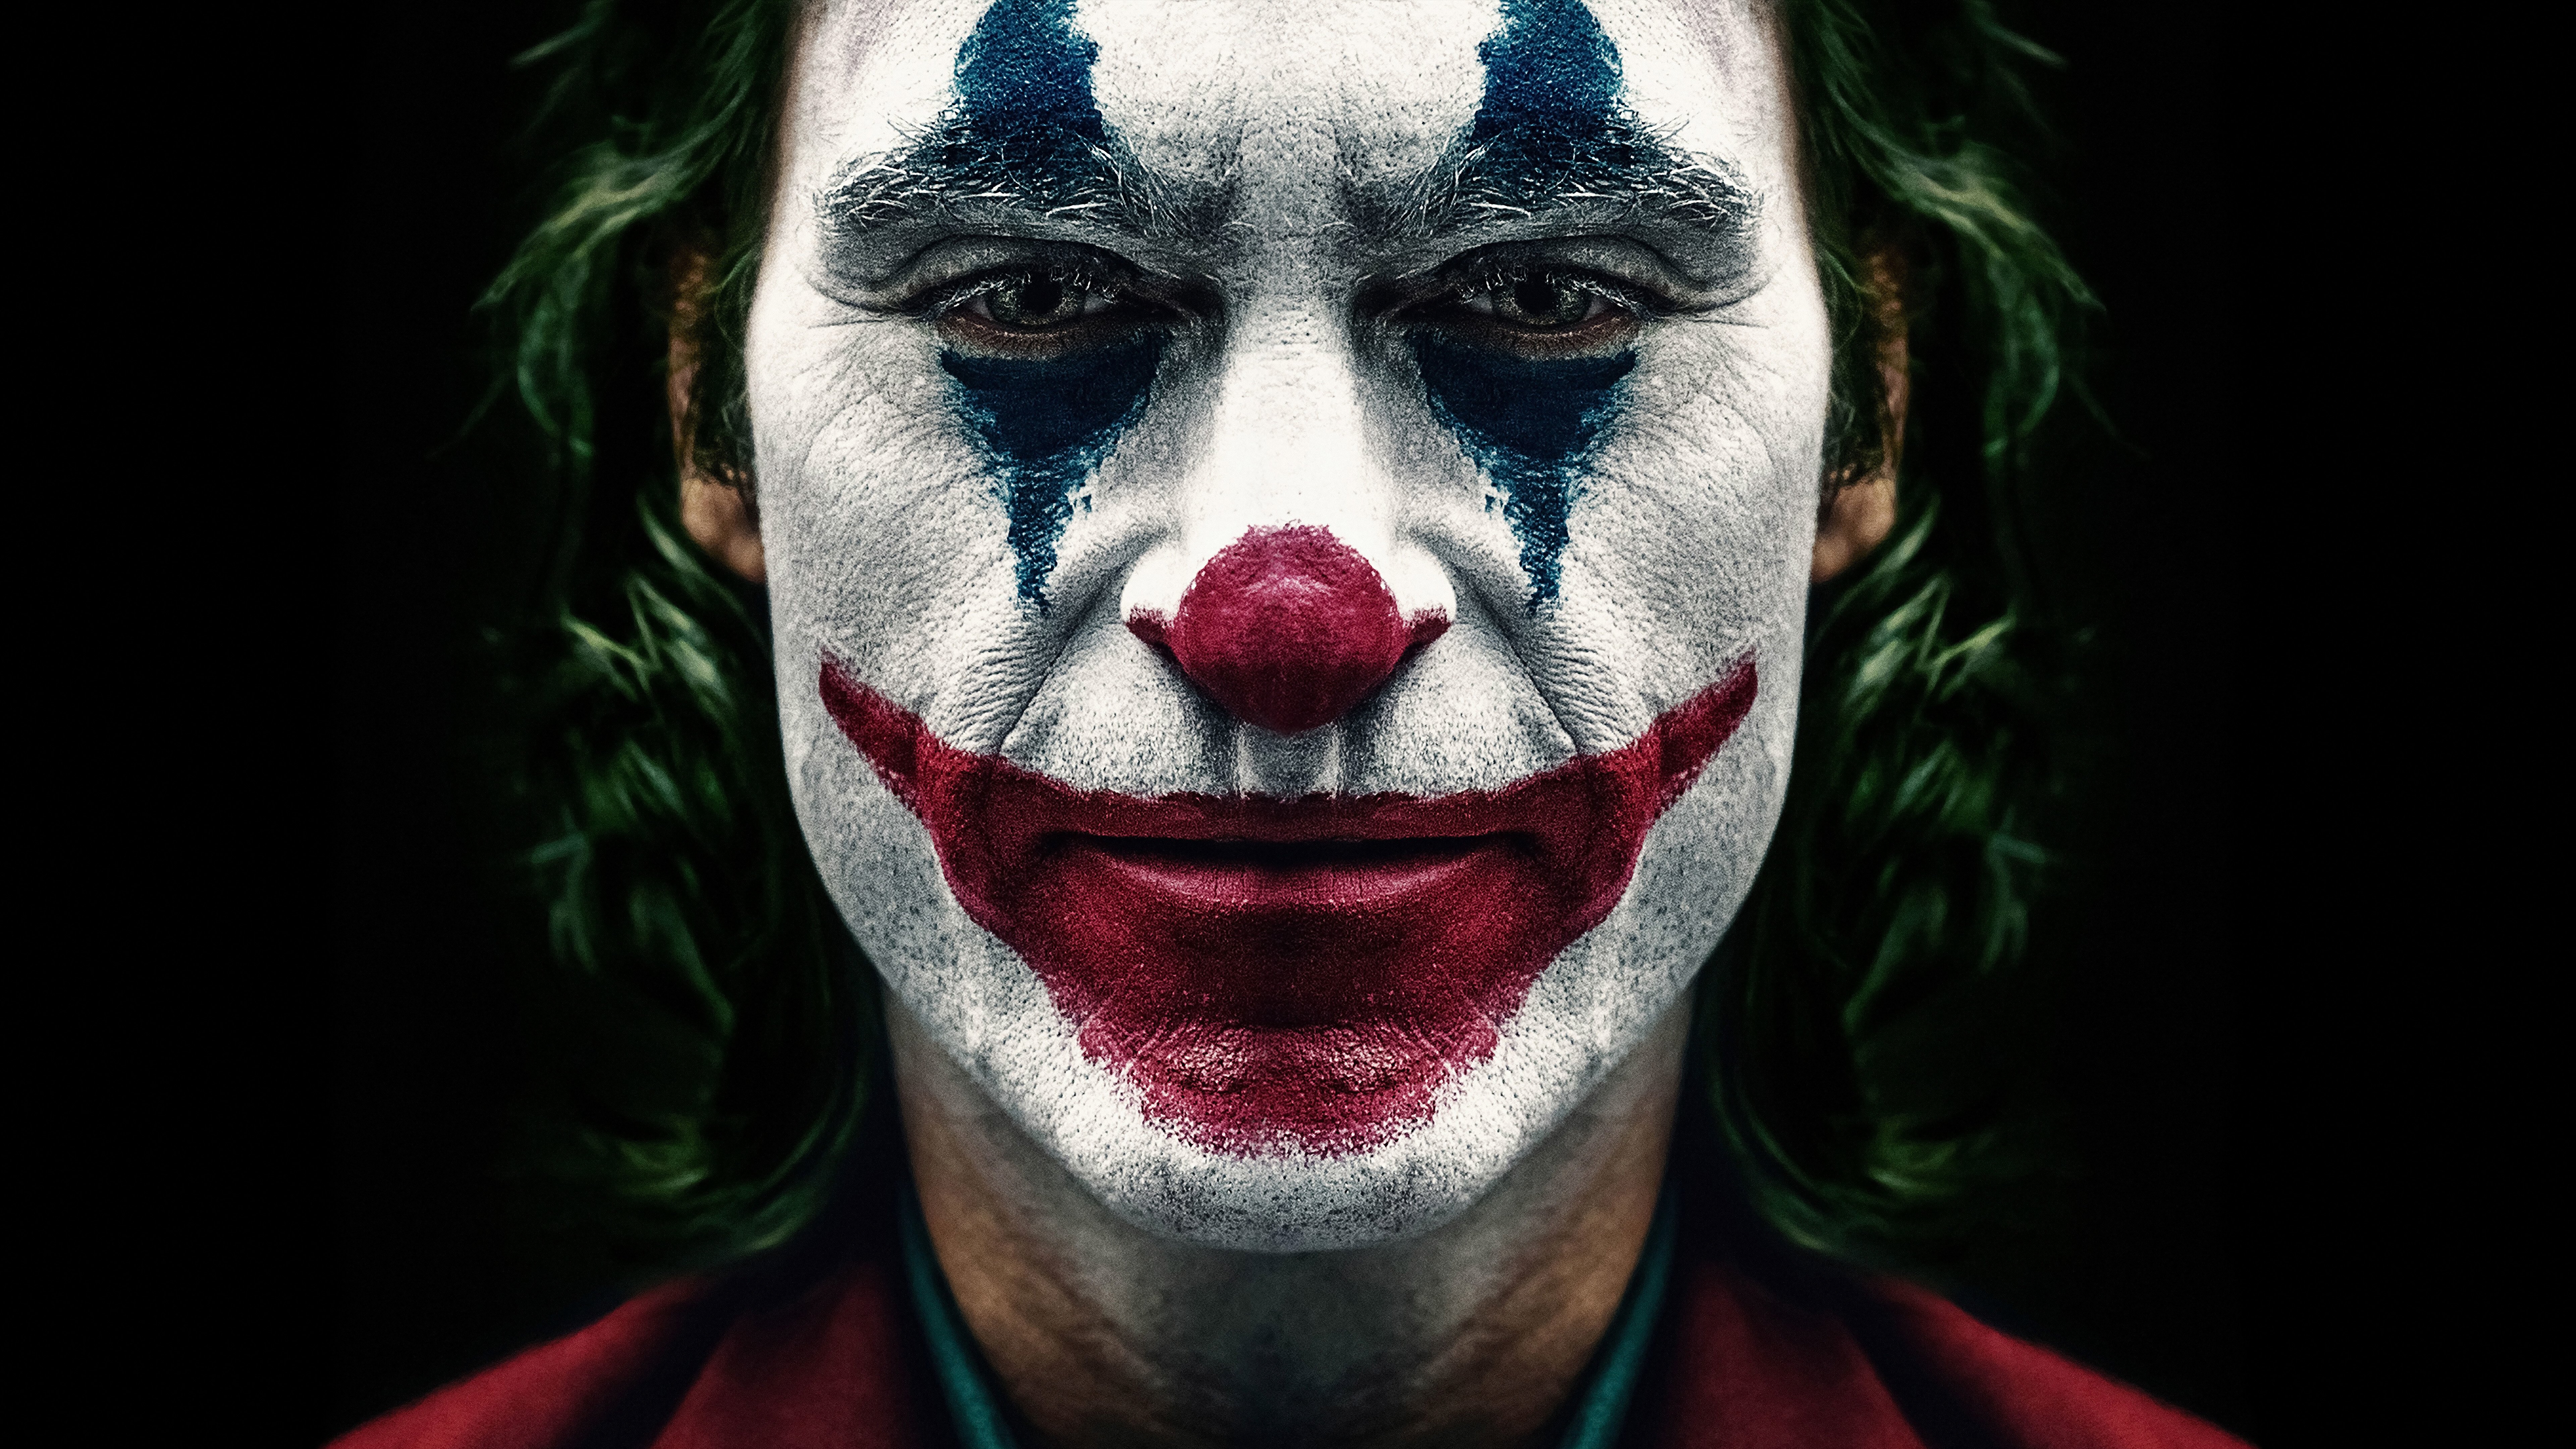 Wallpaper Joker Movie with Joaquin Phoenix